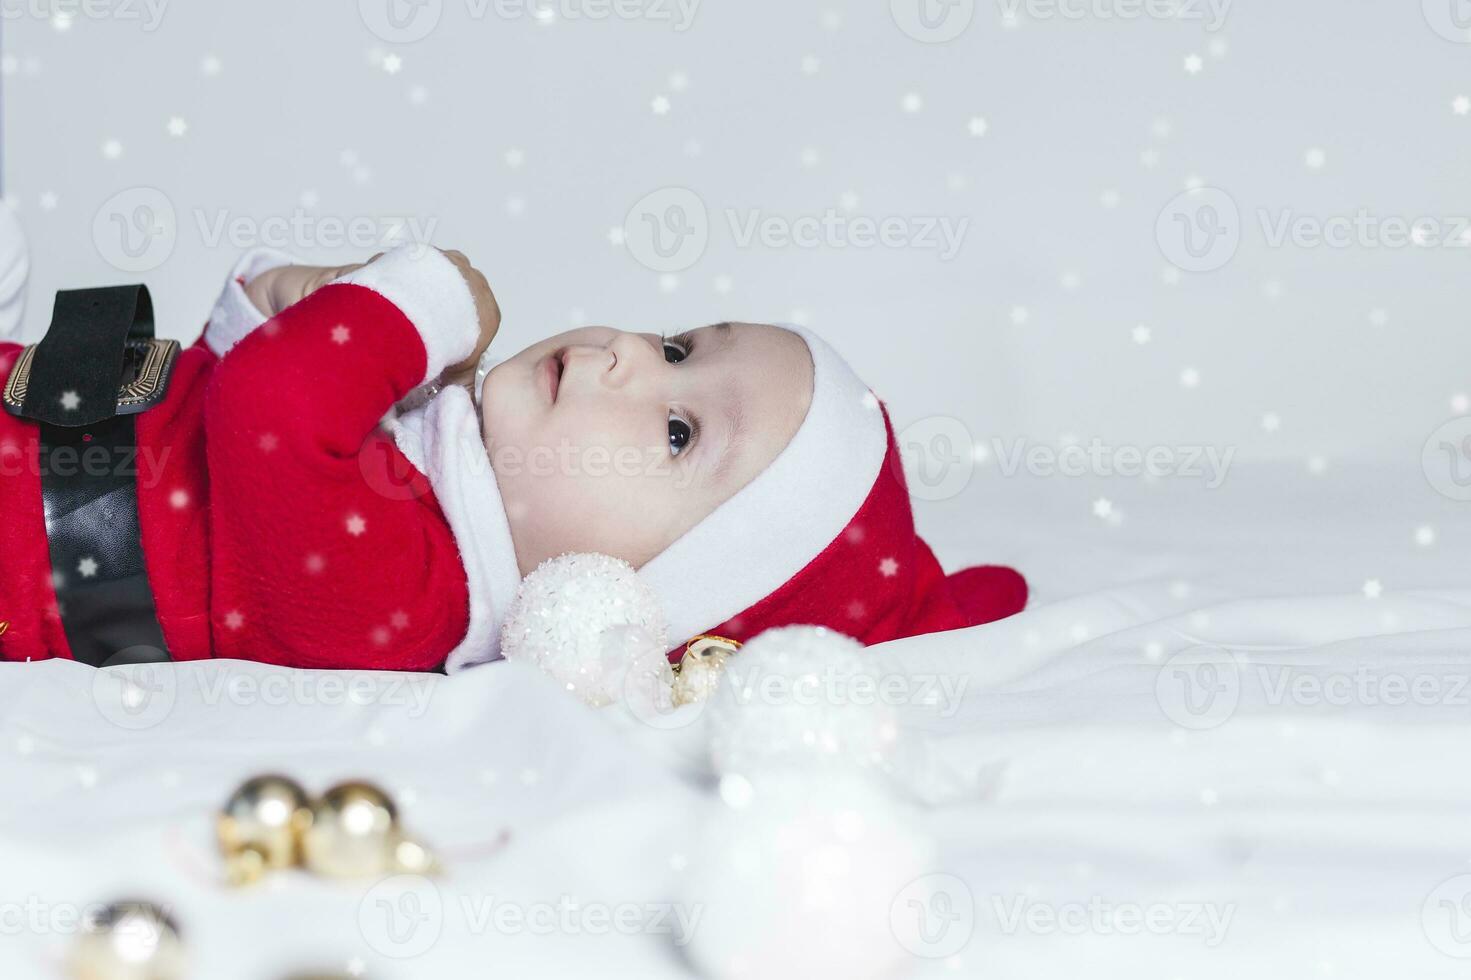 poco babbo natale. 6-9 mesi vecchio bambino ragazzo nel Santa Claus costume. allegro Natale foto